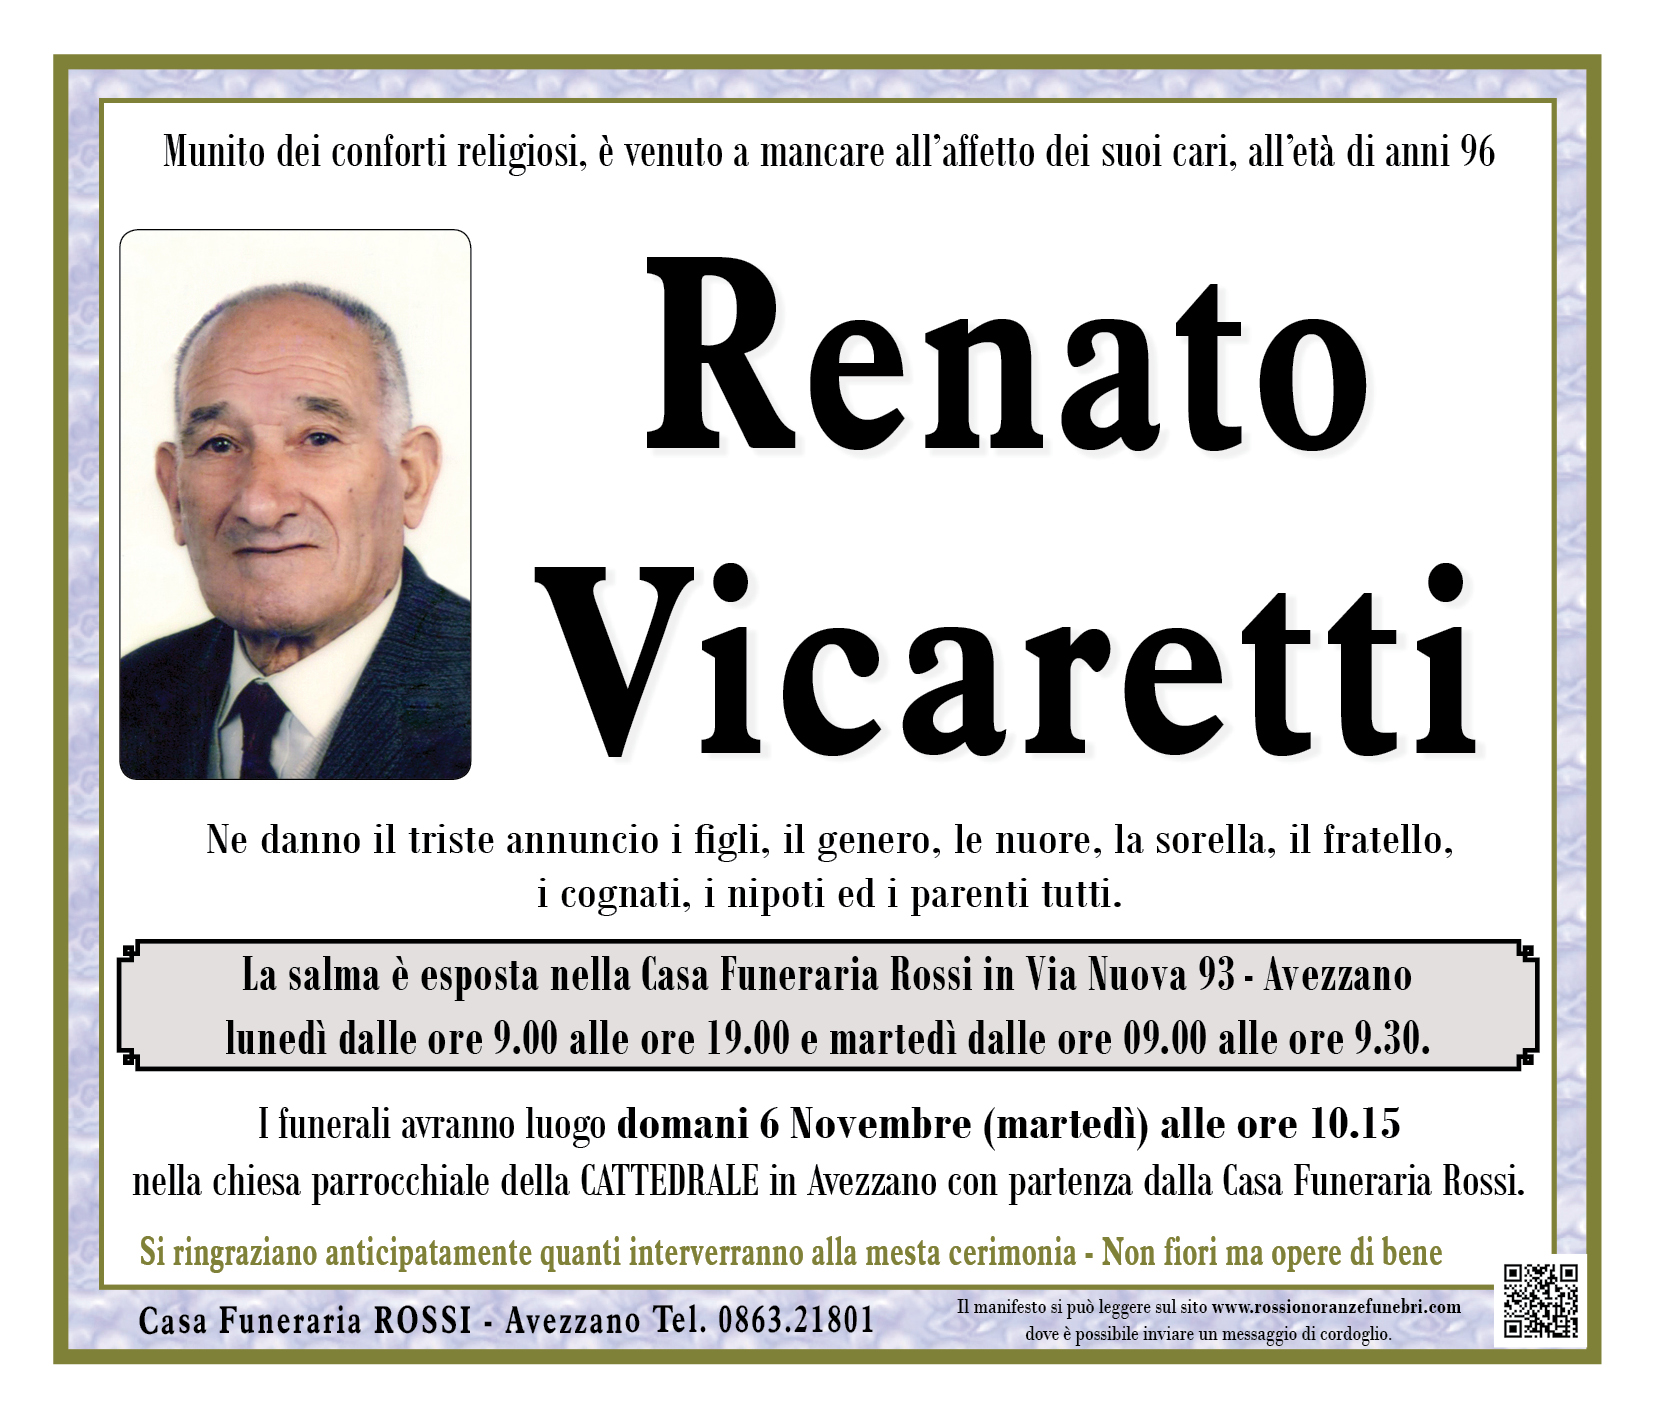 Renato Vicaretti